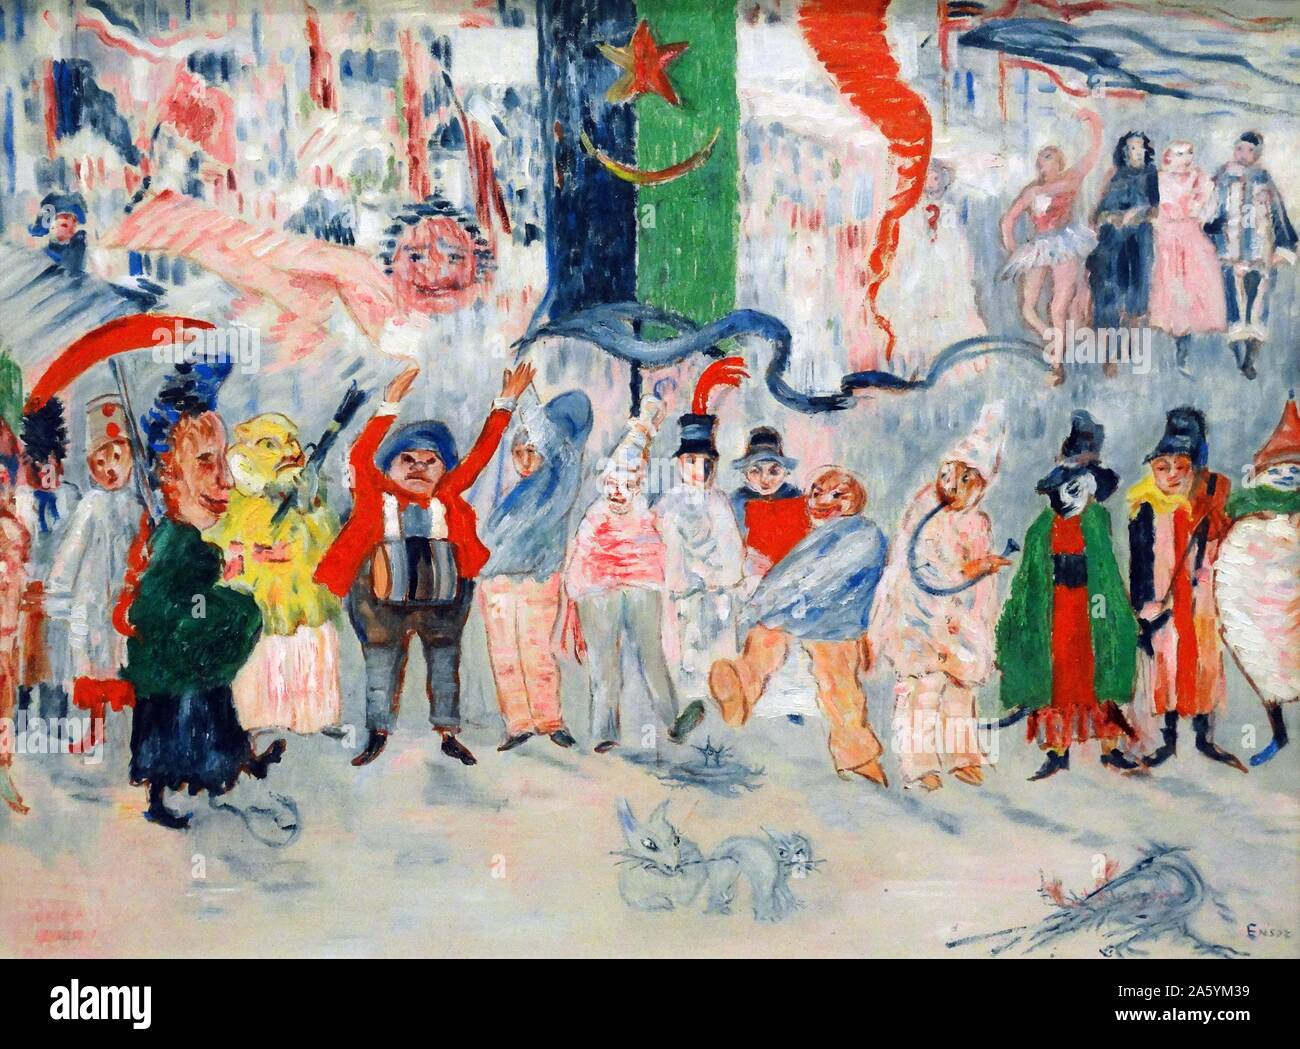 Carnaval en Flandes óleo sobre lienzo) por James Ensor (1860-1949) fue un pintor y grabador belga, una importante influencia en el expresionismo y surrealismo que vivió en Ostende durante casi toda su vida. Foto de stock